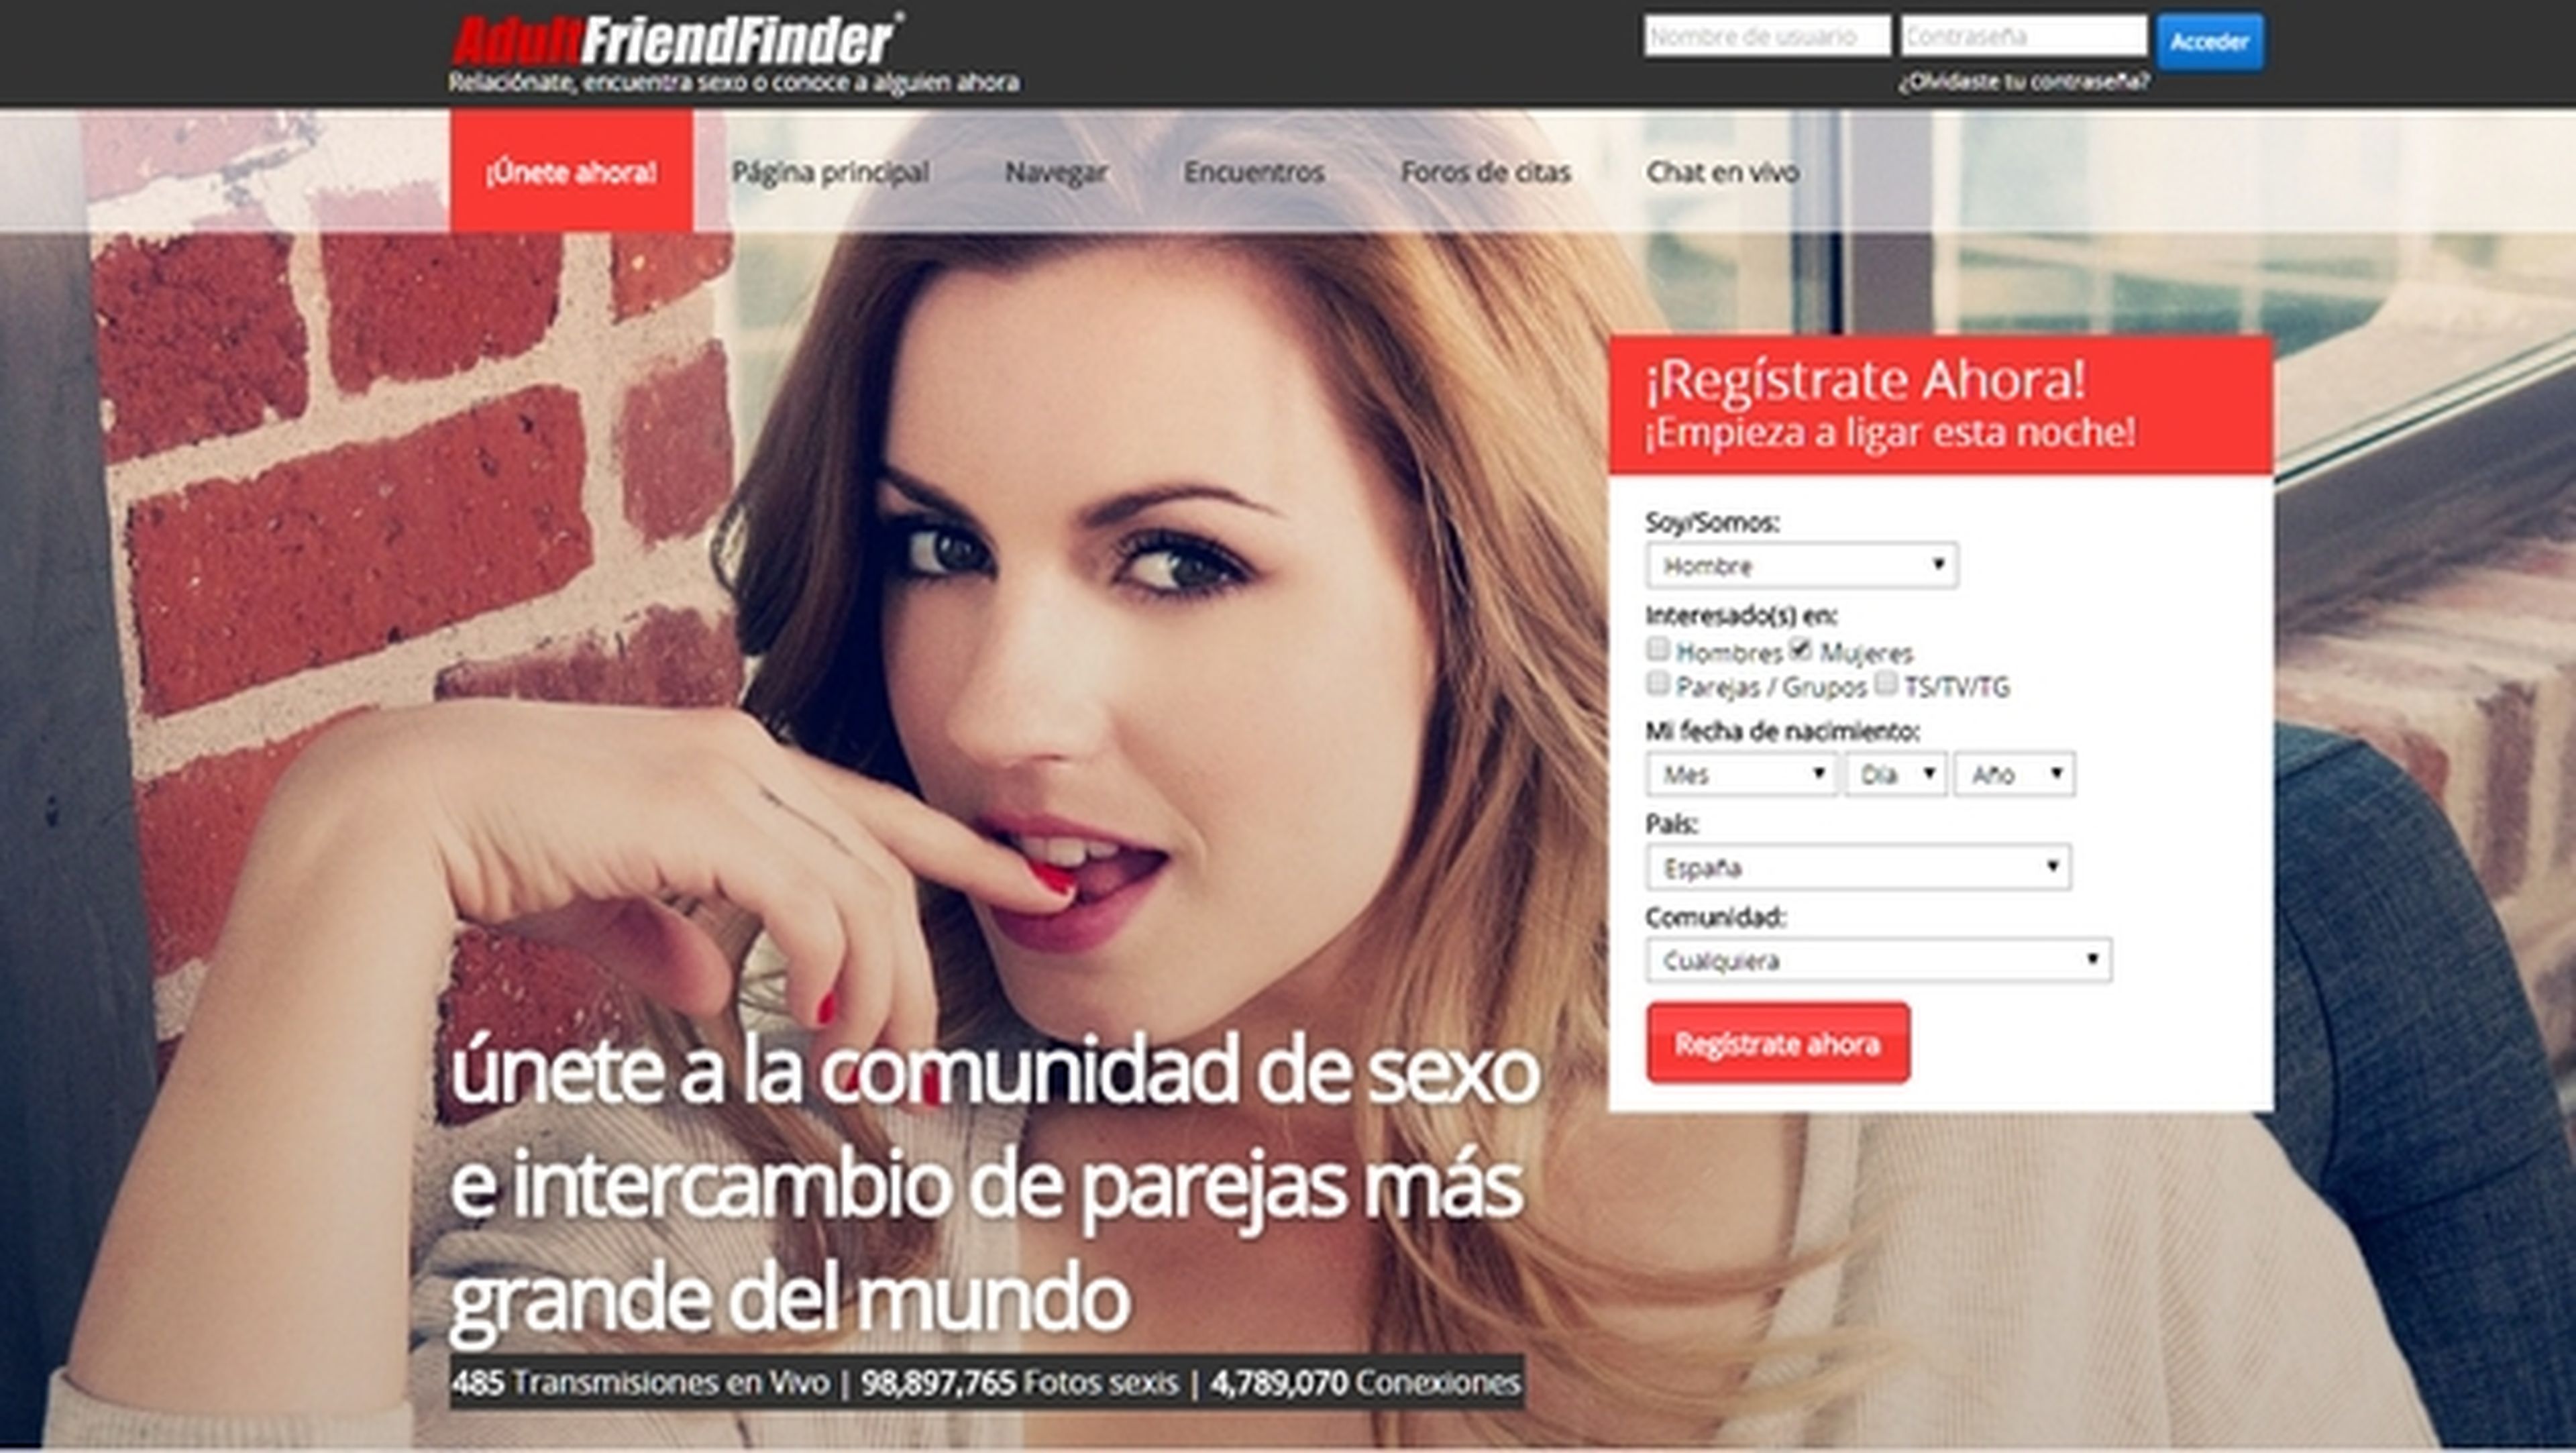 La red social de contactos sexuales AdultFriendFinder, hackeada